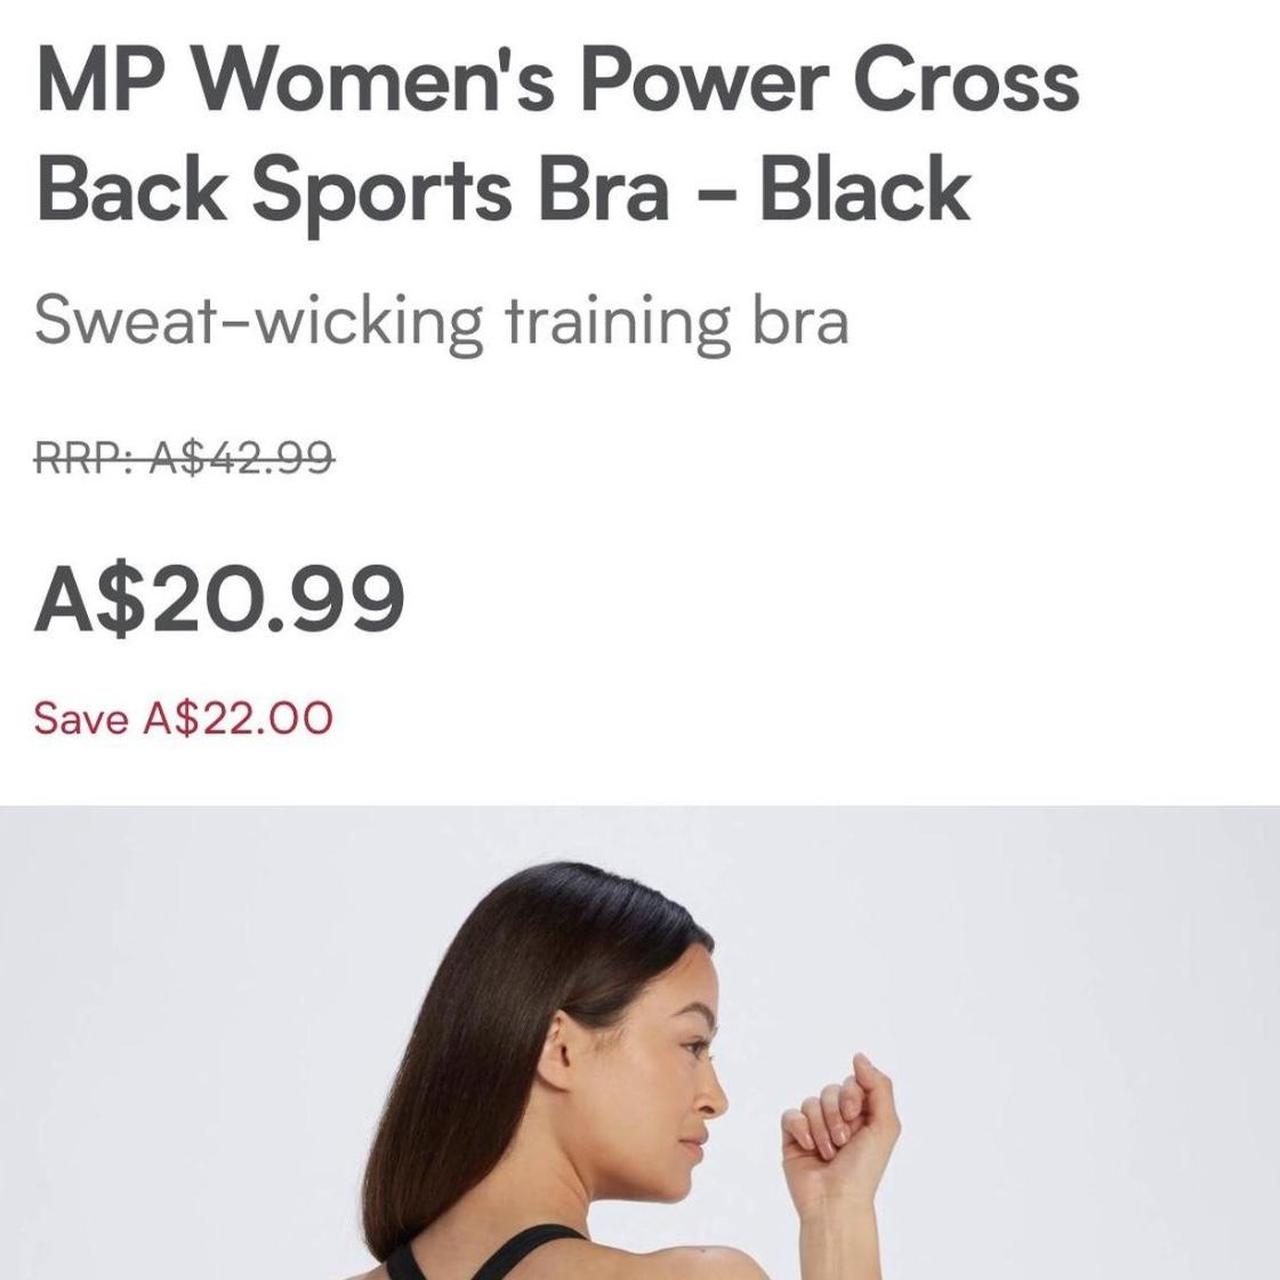 MP Women's Power Cross Back Sports Bra, Black